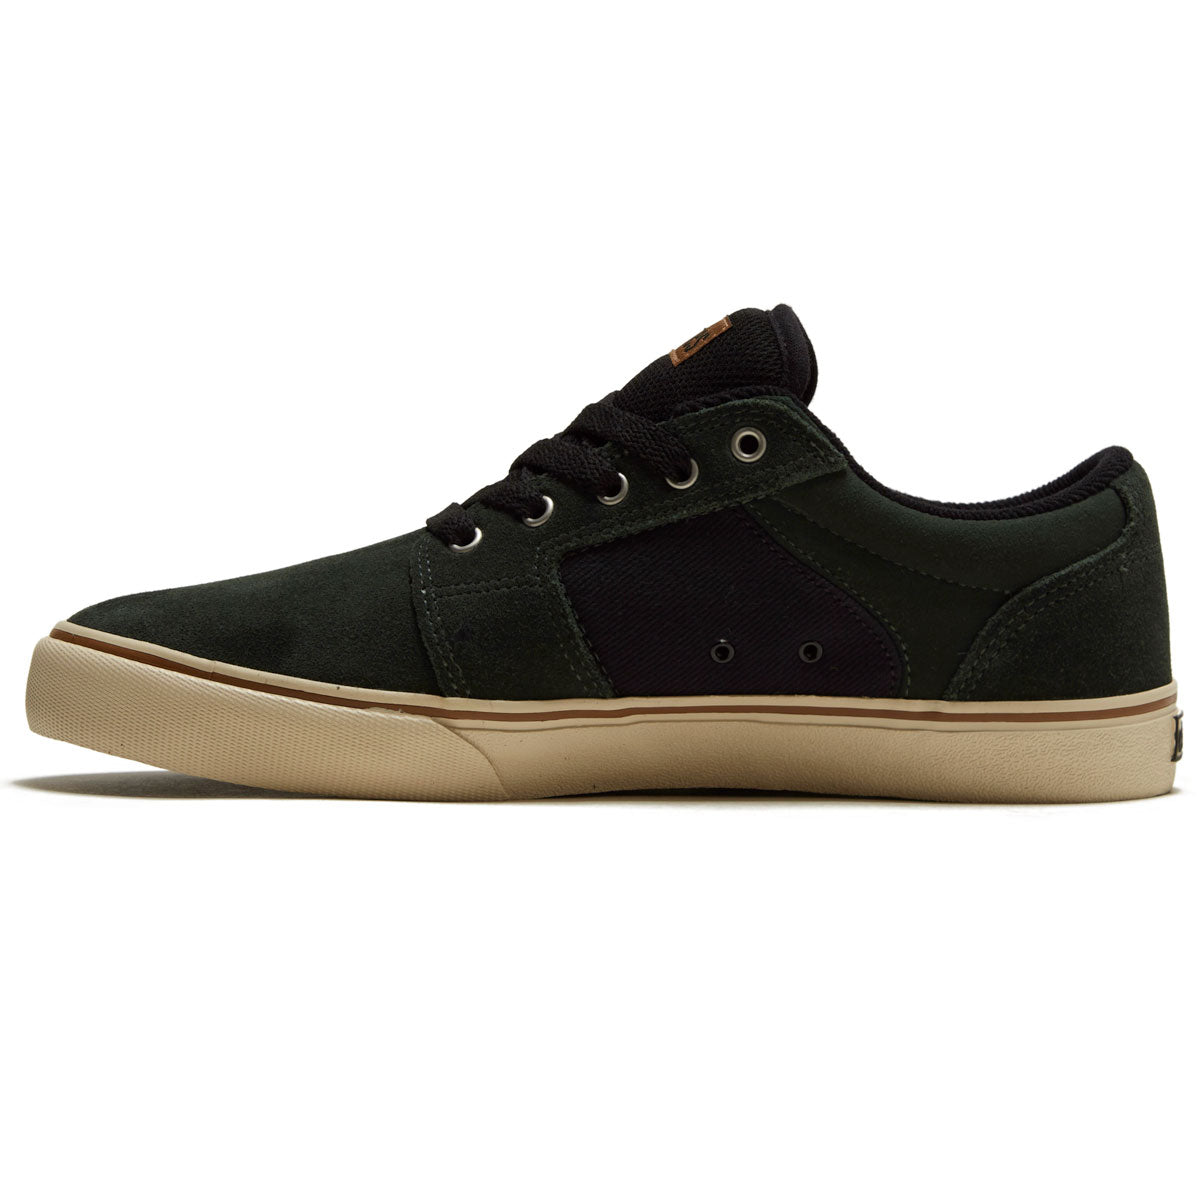 Etnies Barge Ls Shoes - Green/Black image 2